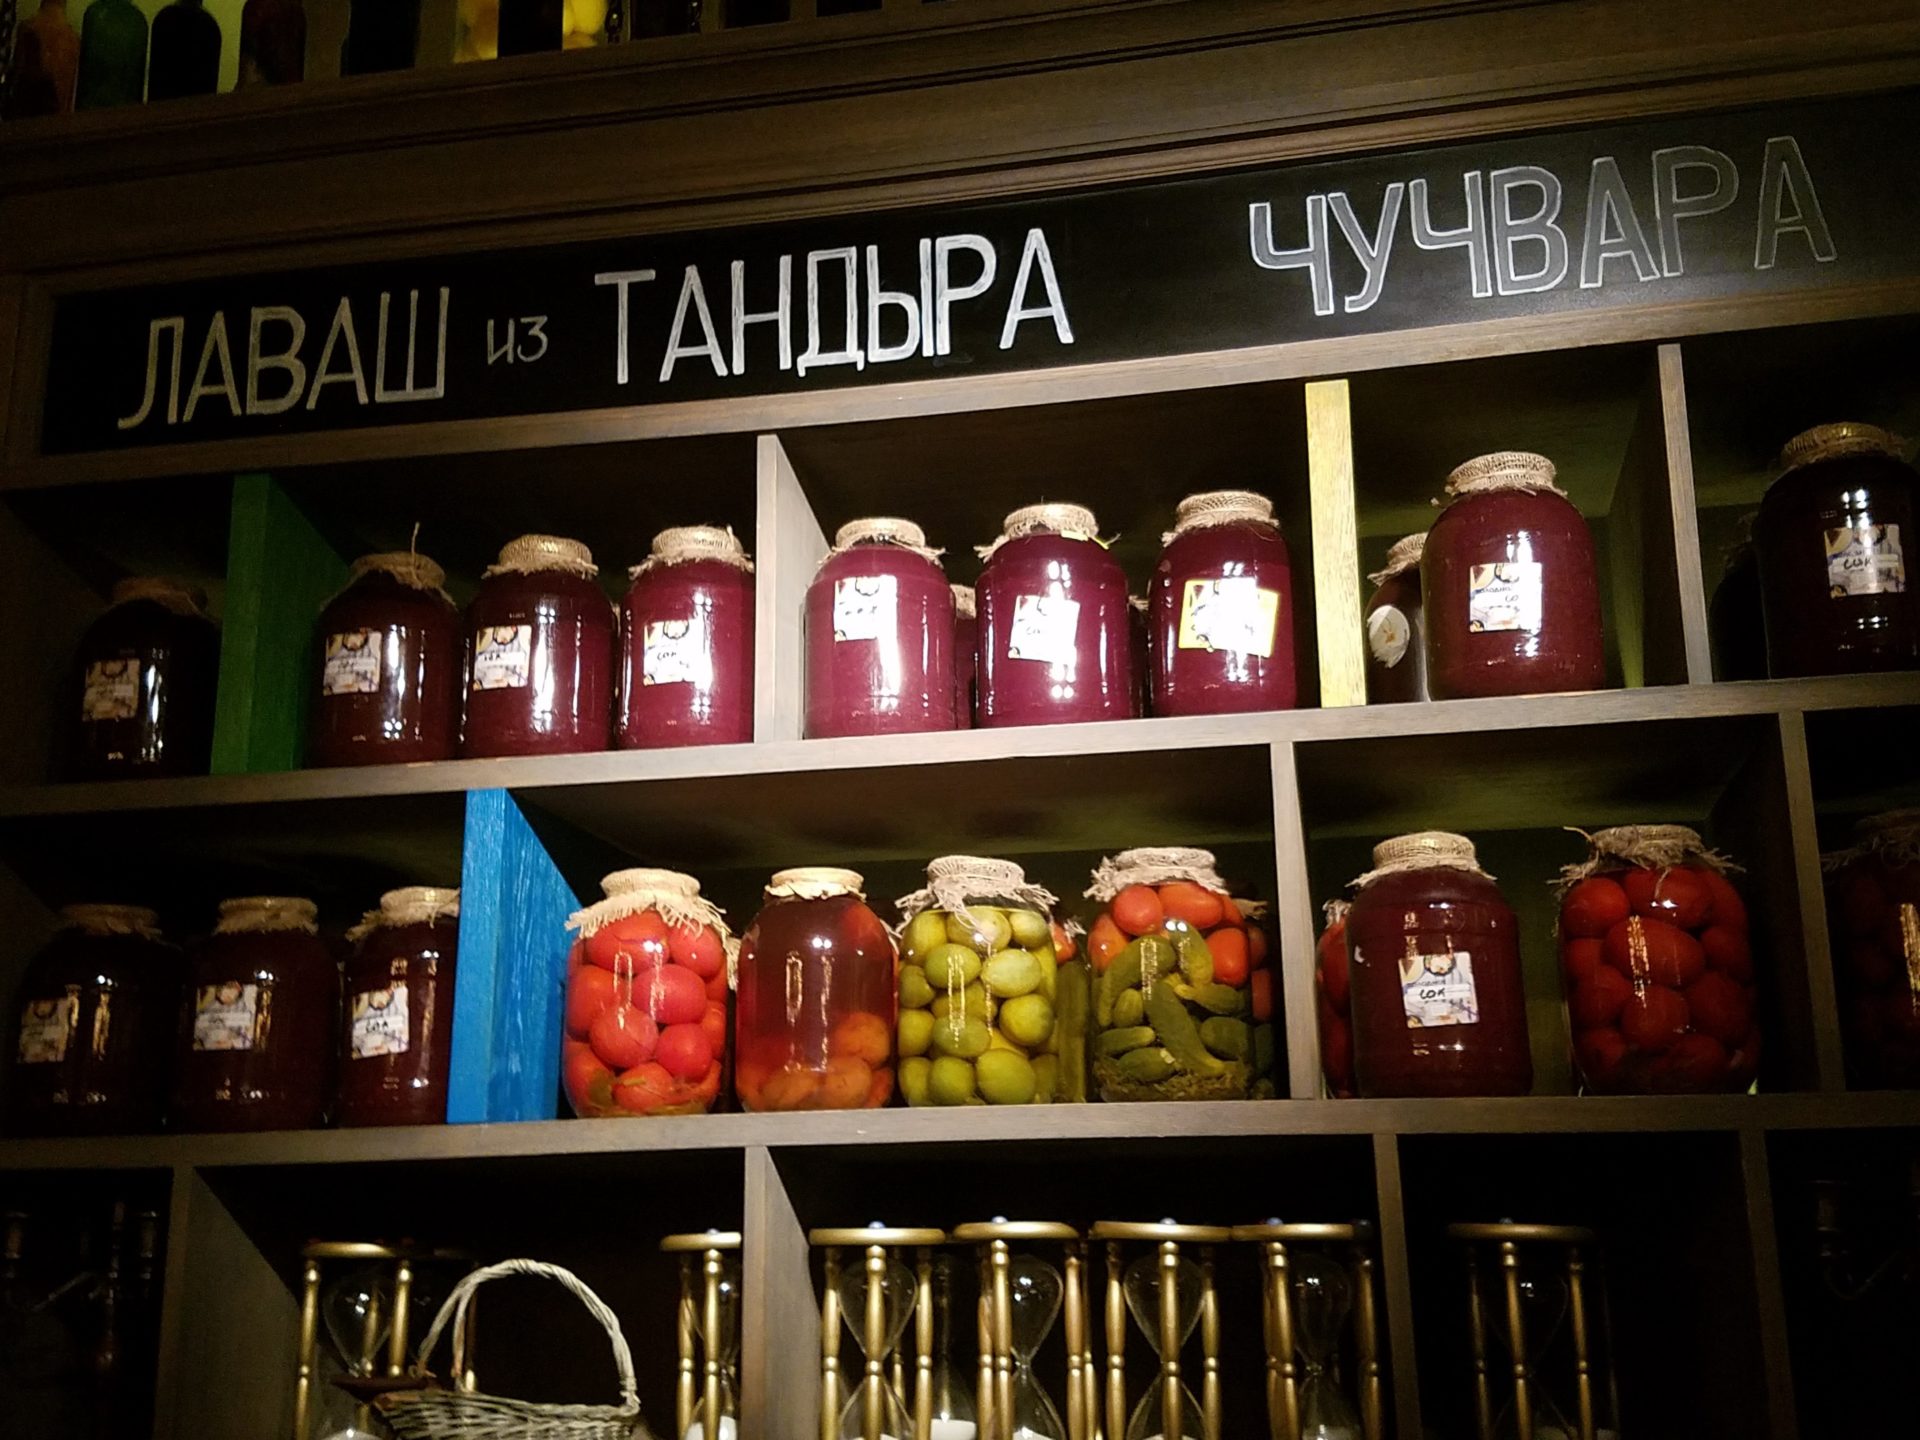 a shelf with jars of food